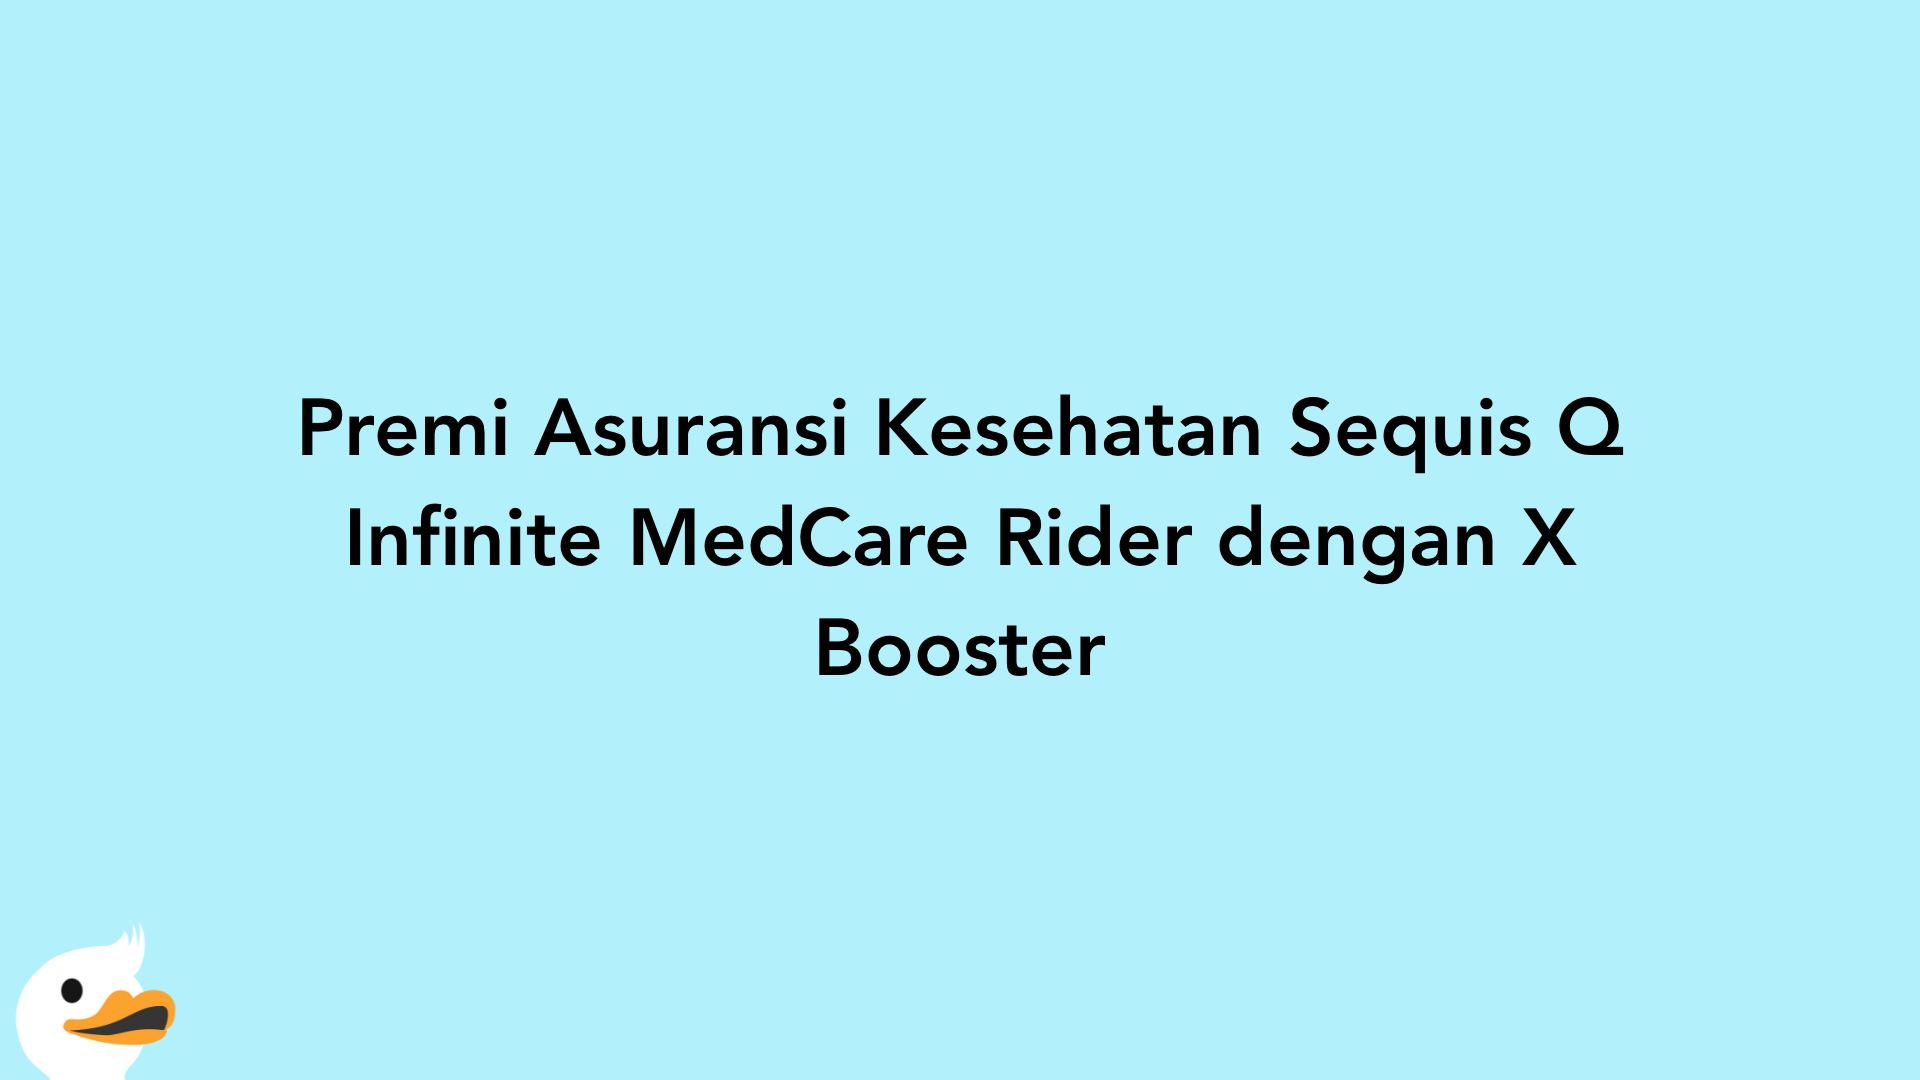 Premi Asuransi Kesehatan Sequis Q Infinite MedCare Rider dengan X Booster